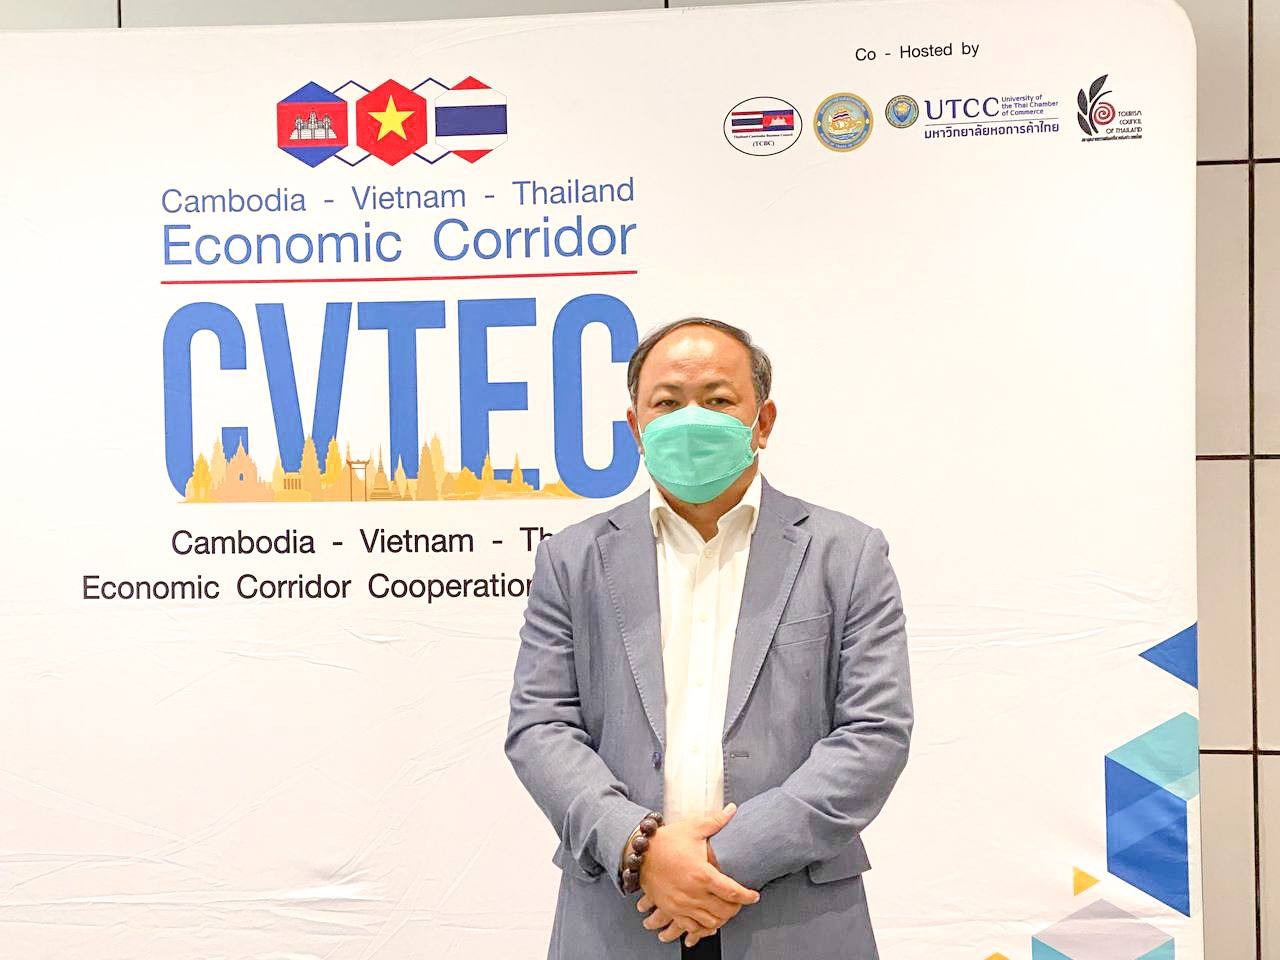 Vietnam - Thailand - Cambodia Cooperate to Promote Tourism